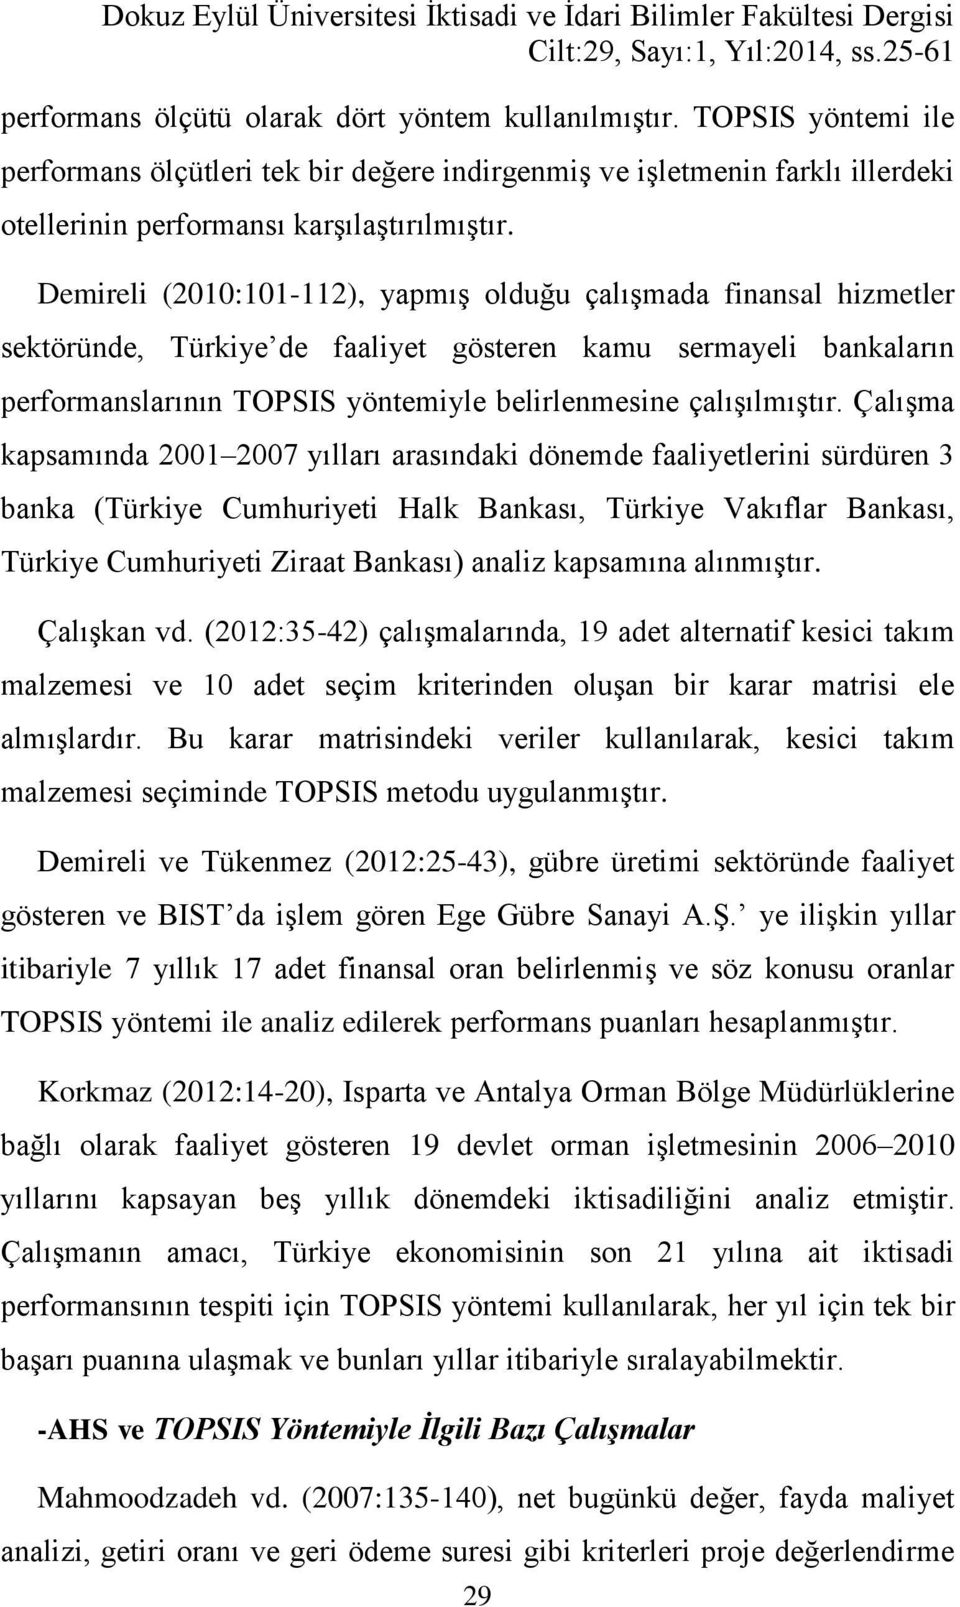 Demireli (21:11-112), yapmış olduğu çalışmada finansal hizmetler sektöründe, Türkiye de faaliyet gösteren kamu sermayeli bankaların performanslarının TOPSIS yöntemiyle belirlenmesine çalışılmıştır.